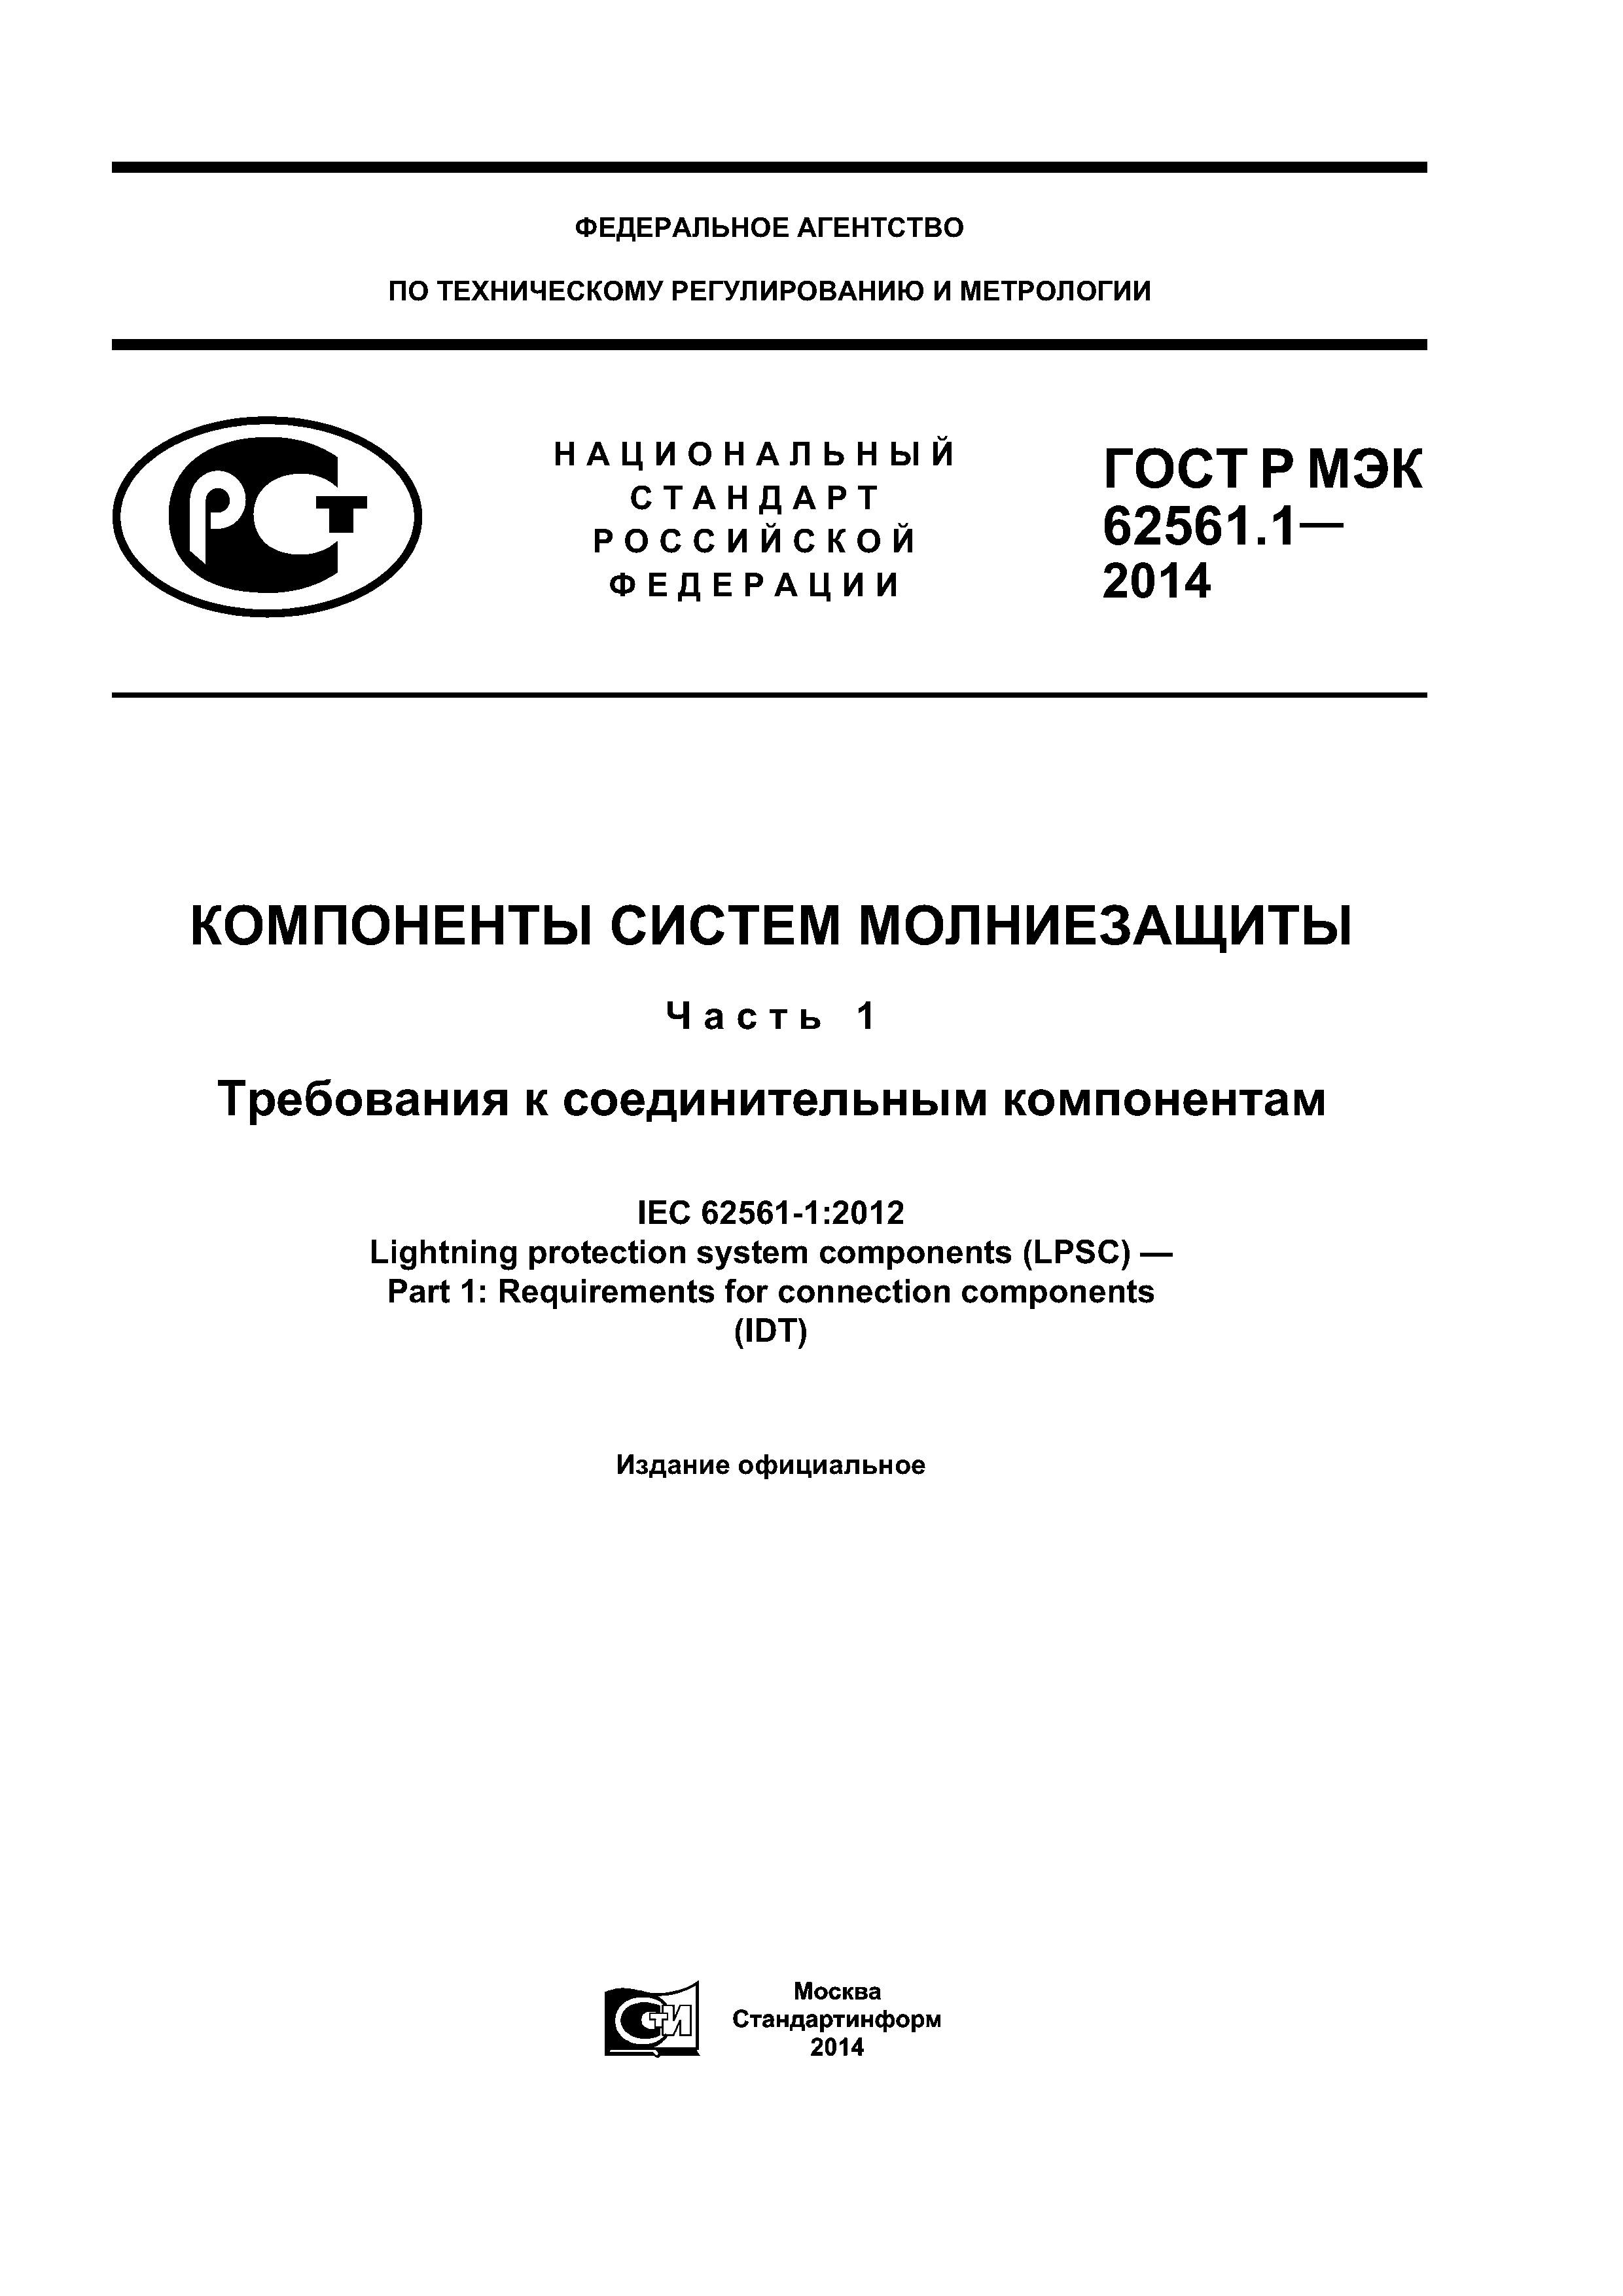 ГОСТ Р МЭК 62561.1-2014